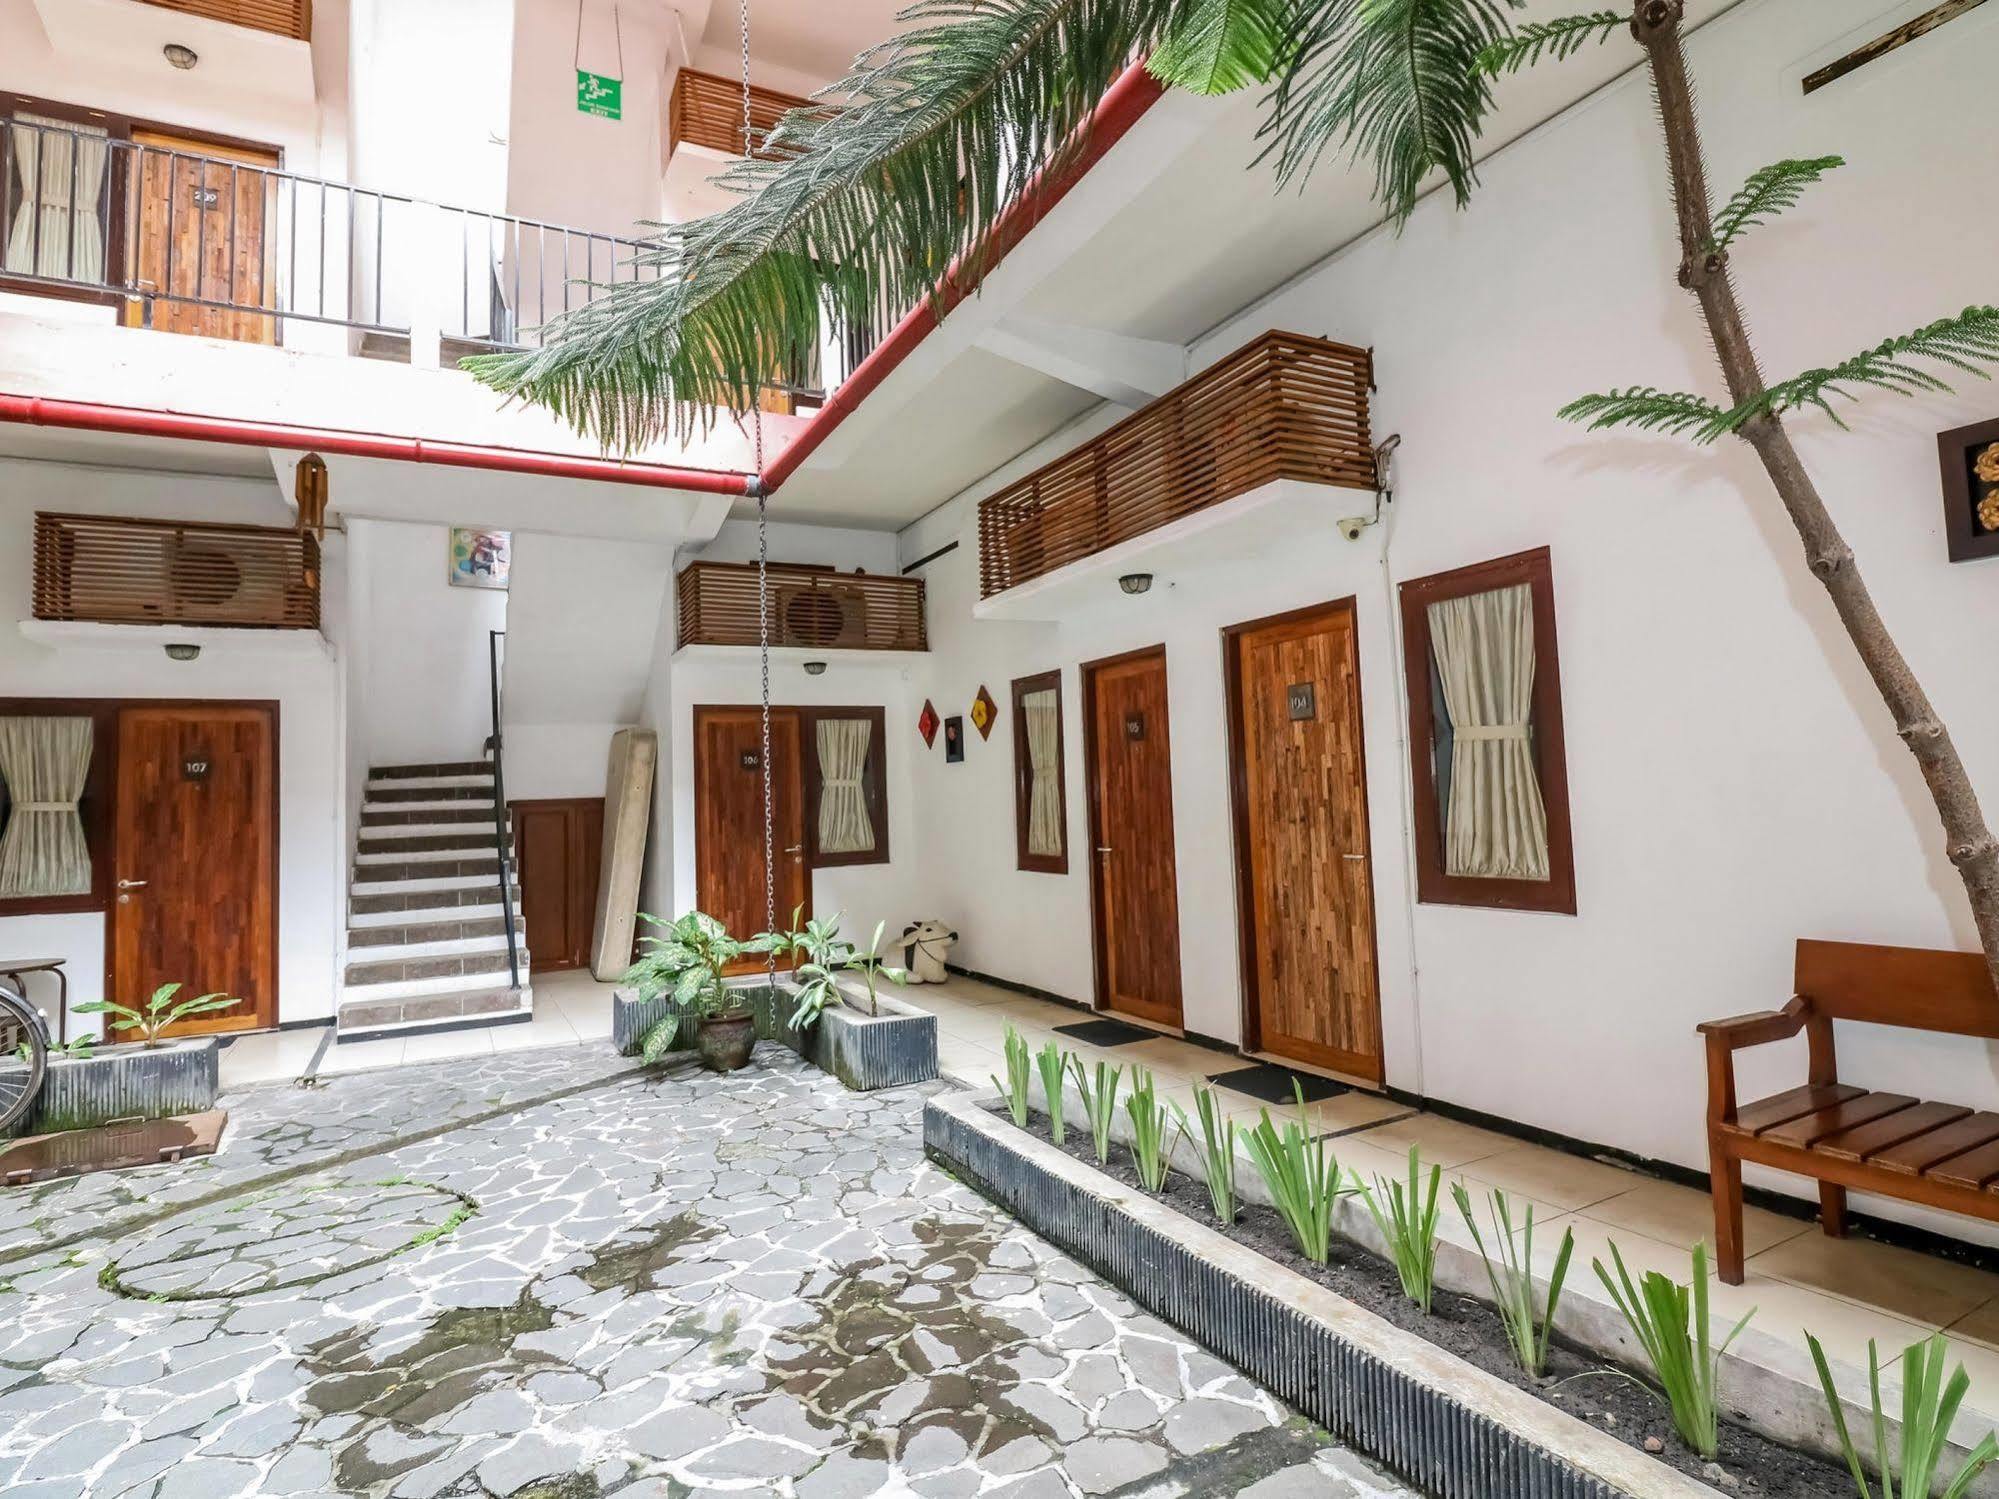 Mawar Asri Hotel Jogyakarta Zewnętrze zdjęcie